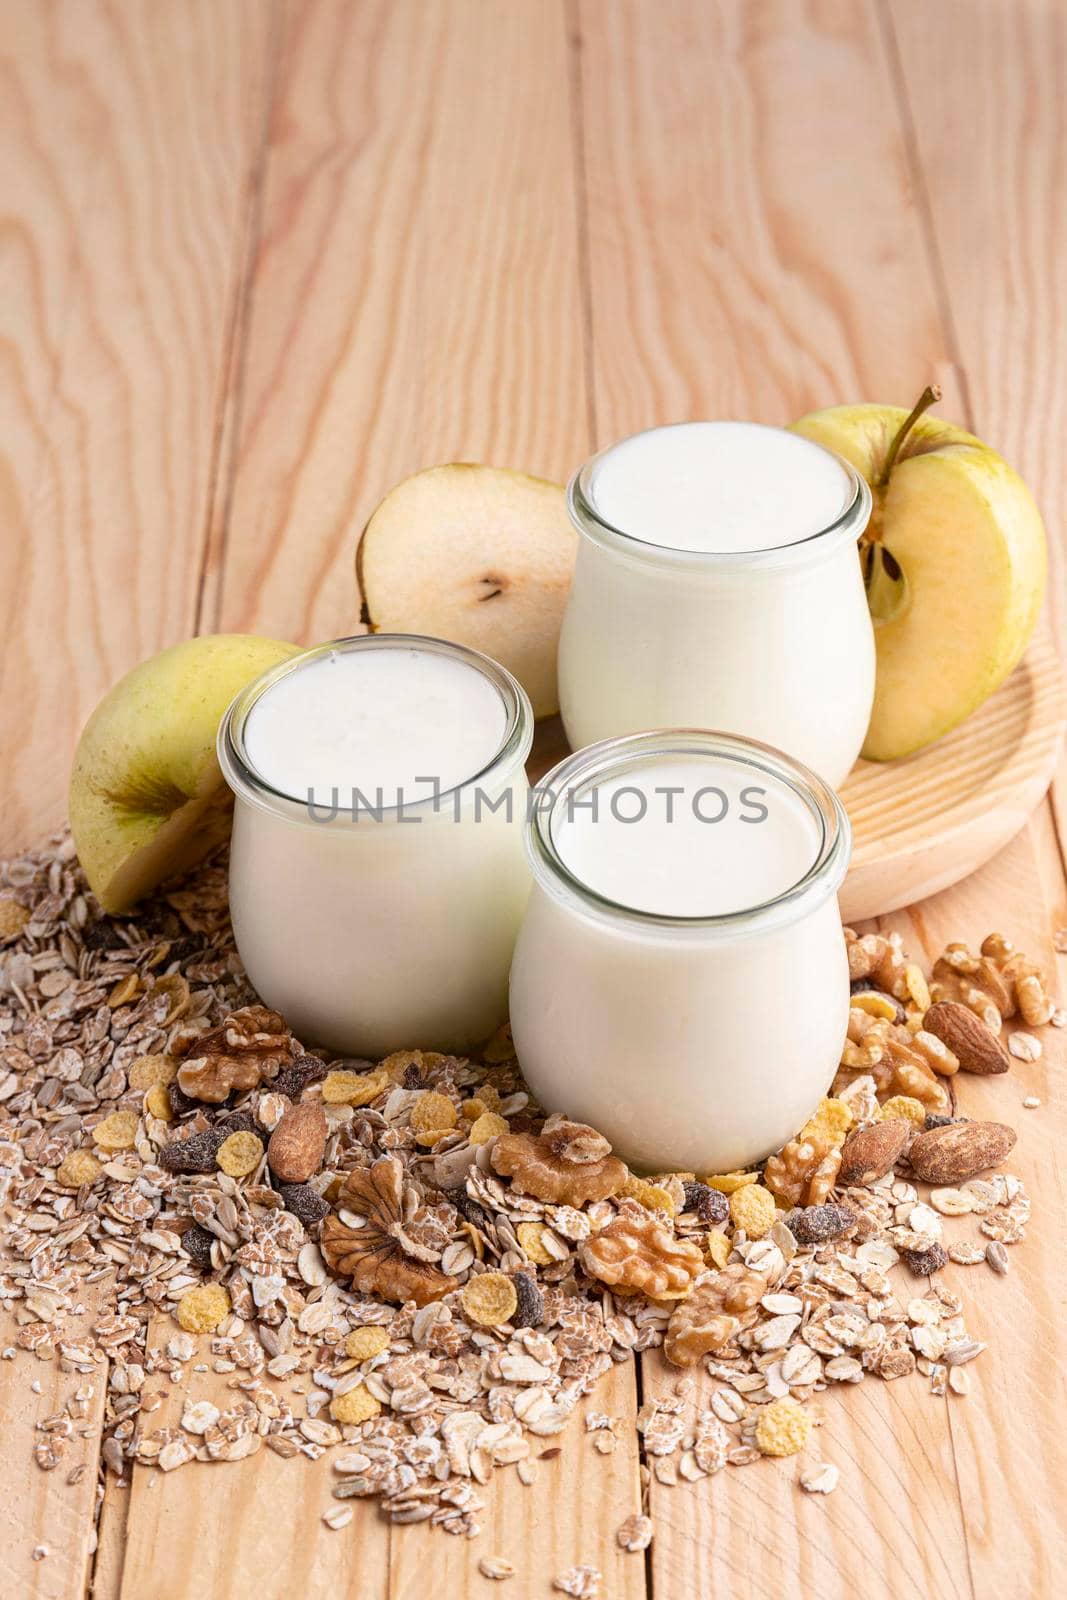 high angle plain yogurt jars with oats apple